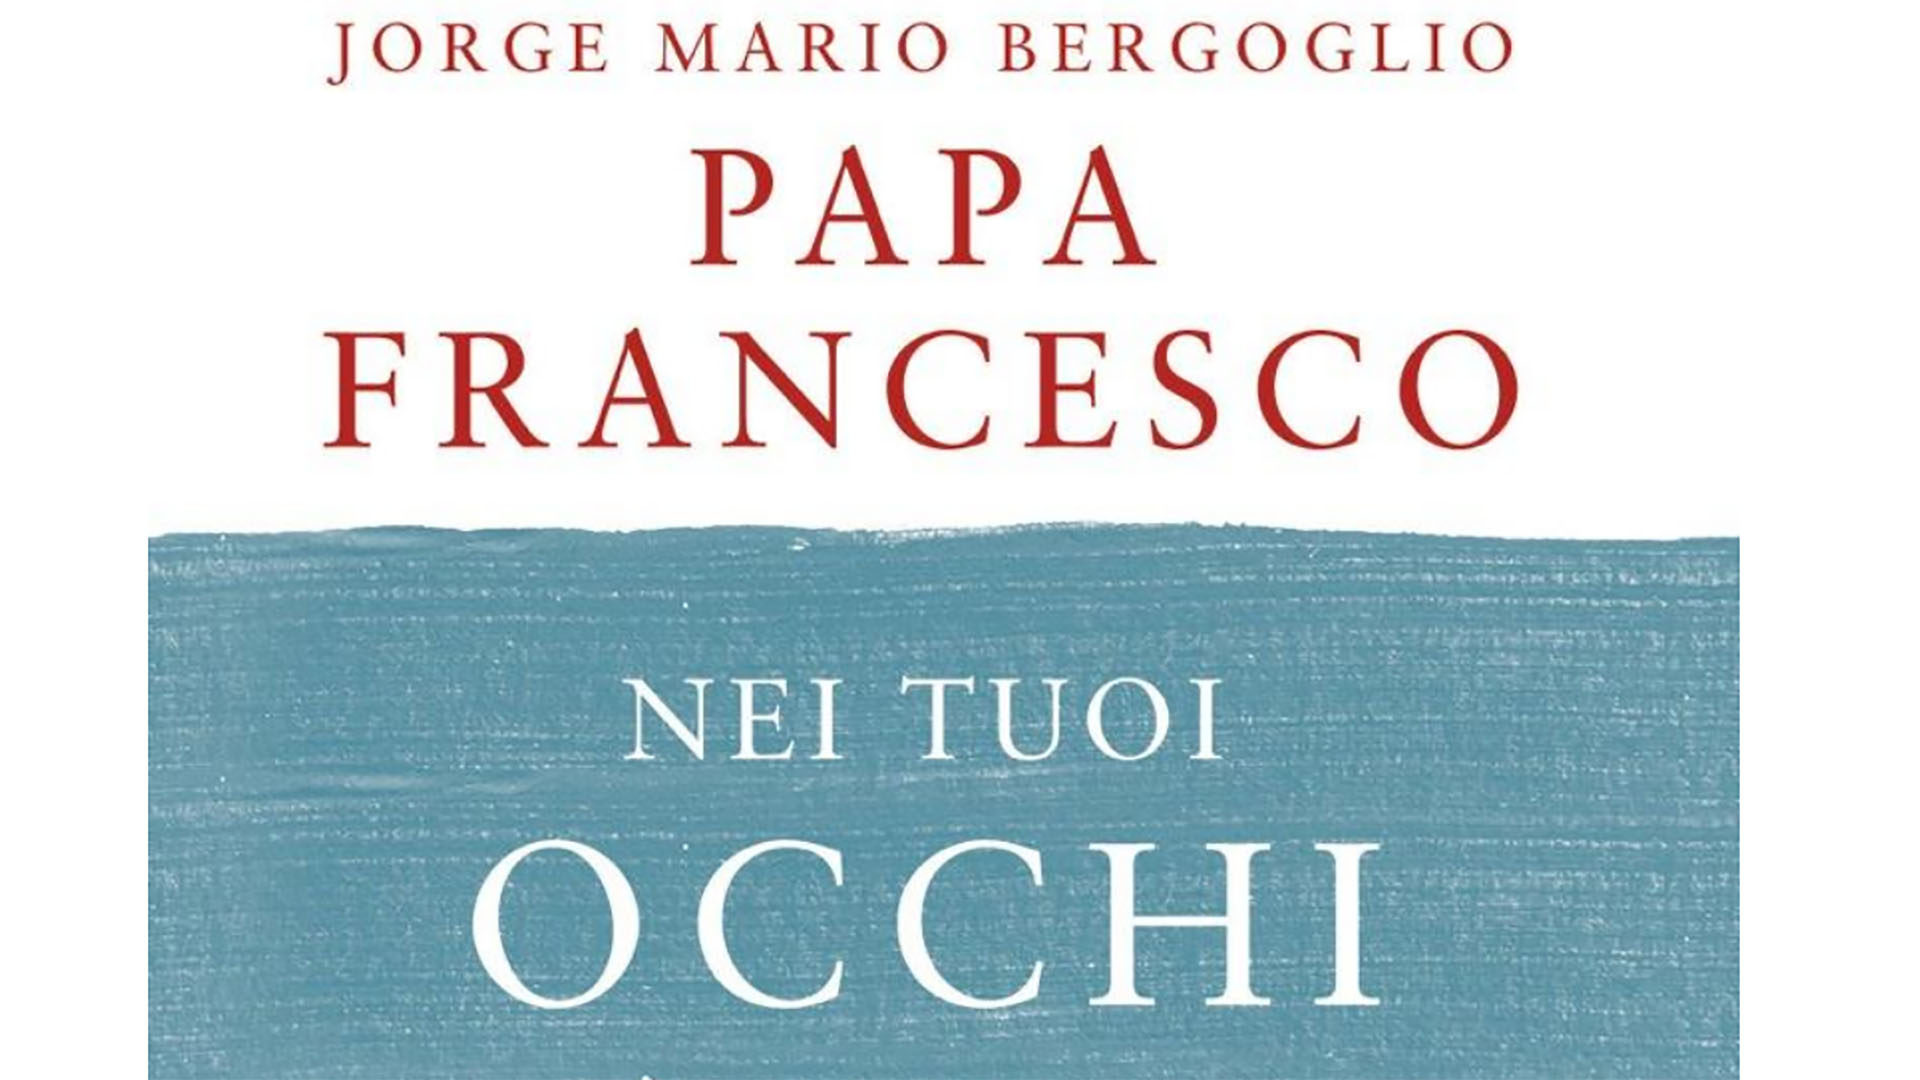 Le livre du pape François a été réalisé lors d'un discussion avec le père Antonio Spadaro, directeur de La Civiltà cattolica (photo: capture d'écran)